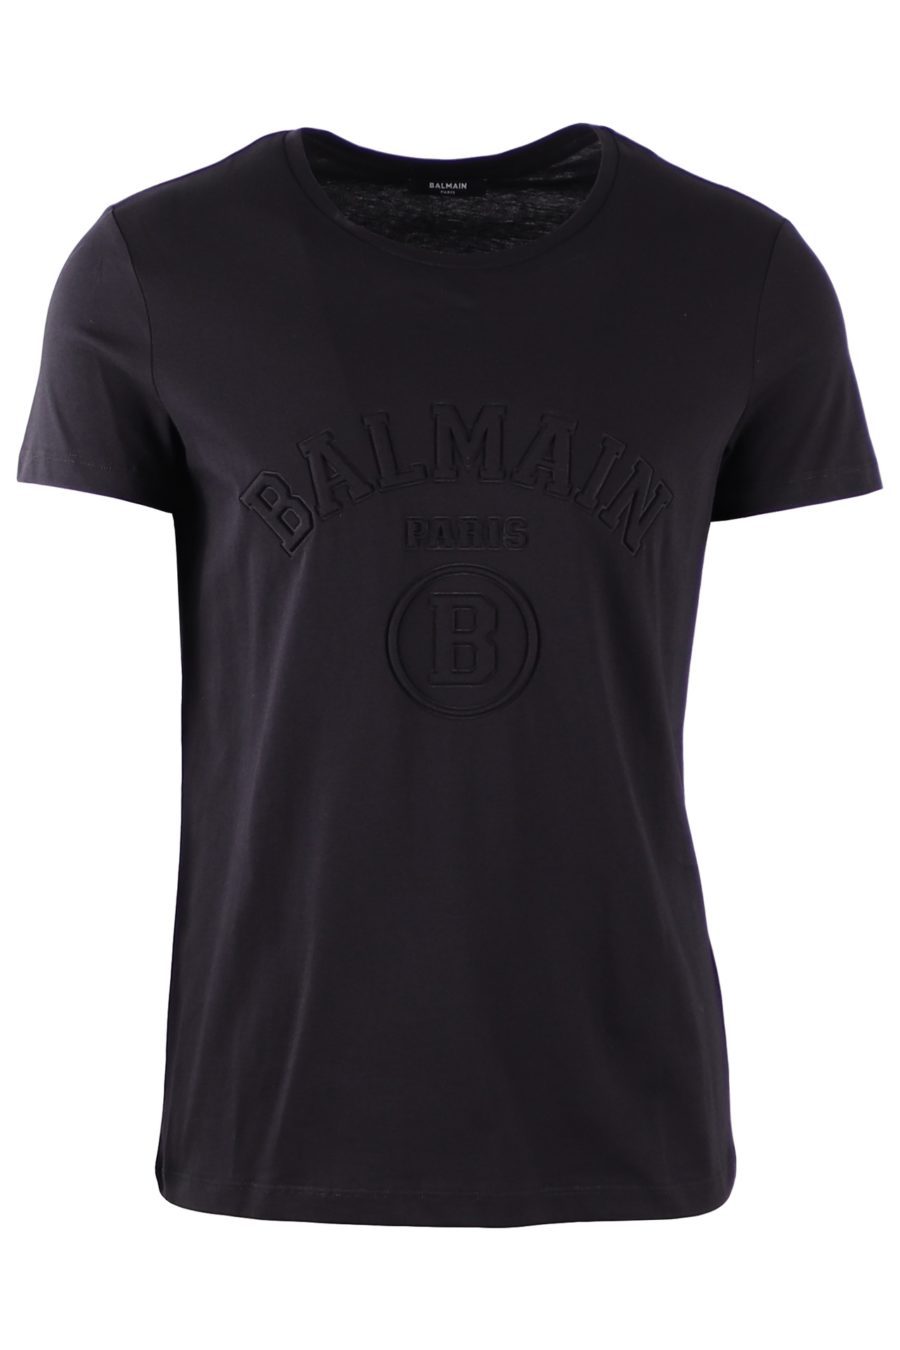 Balmain T-shirt preta com logótipo em relevo - 9f5831a8d5c240af86a7d4ad329e938cf16486b8